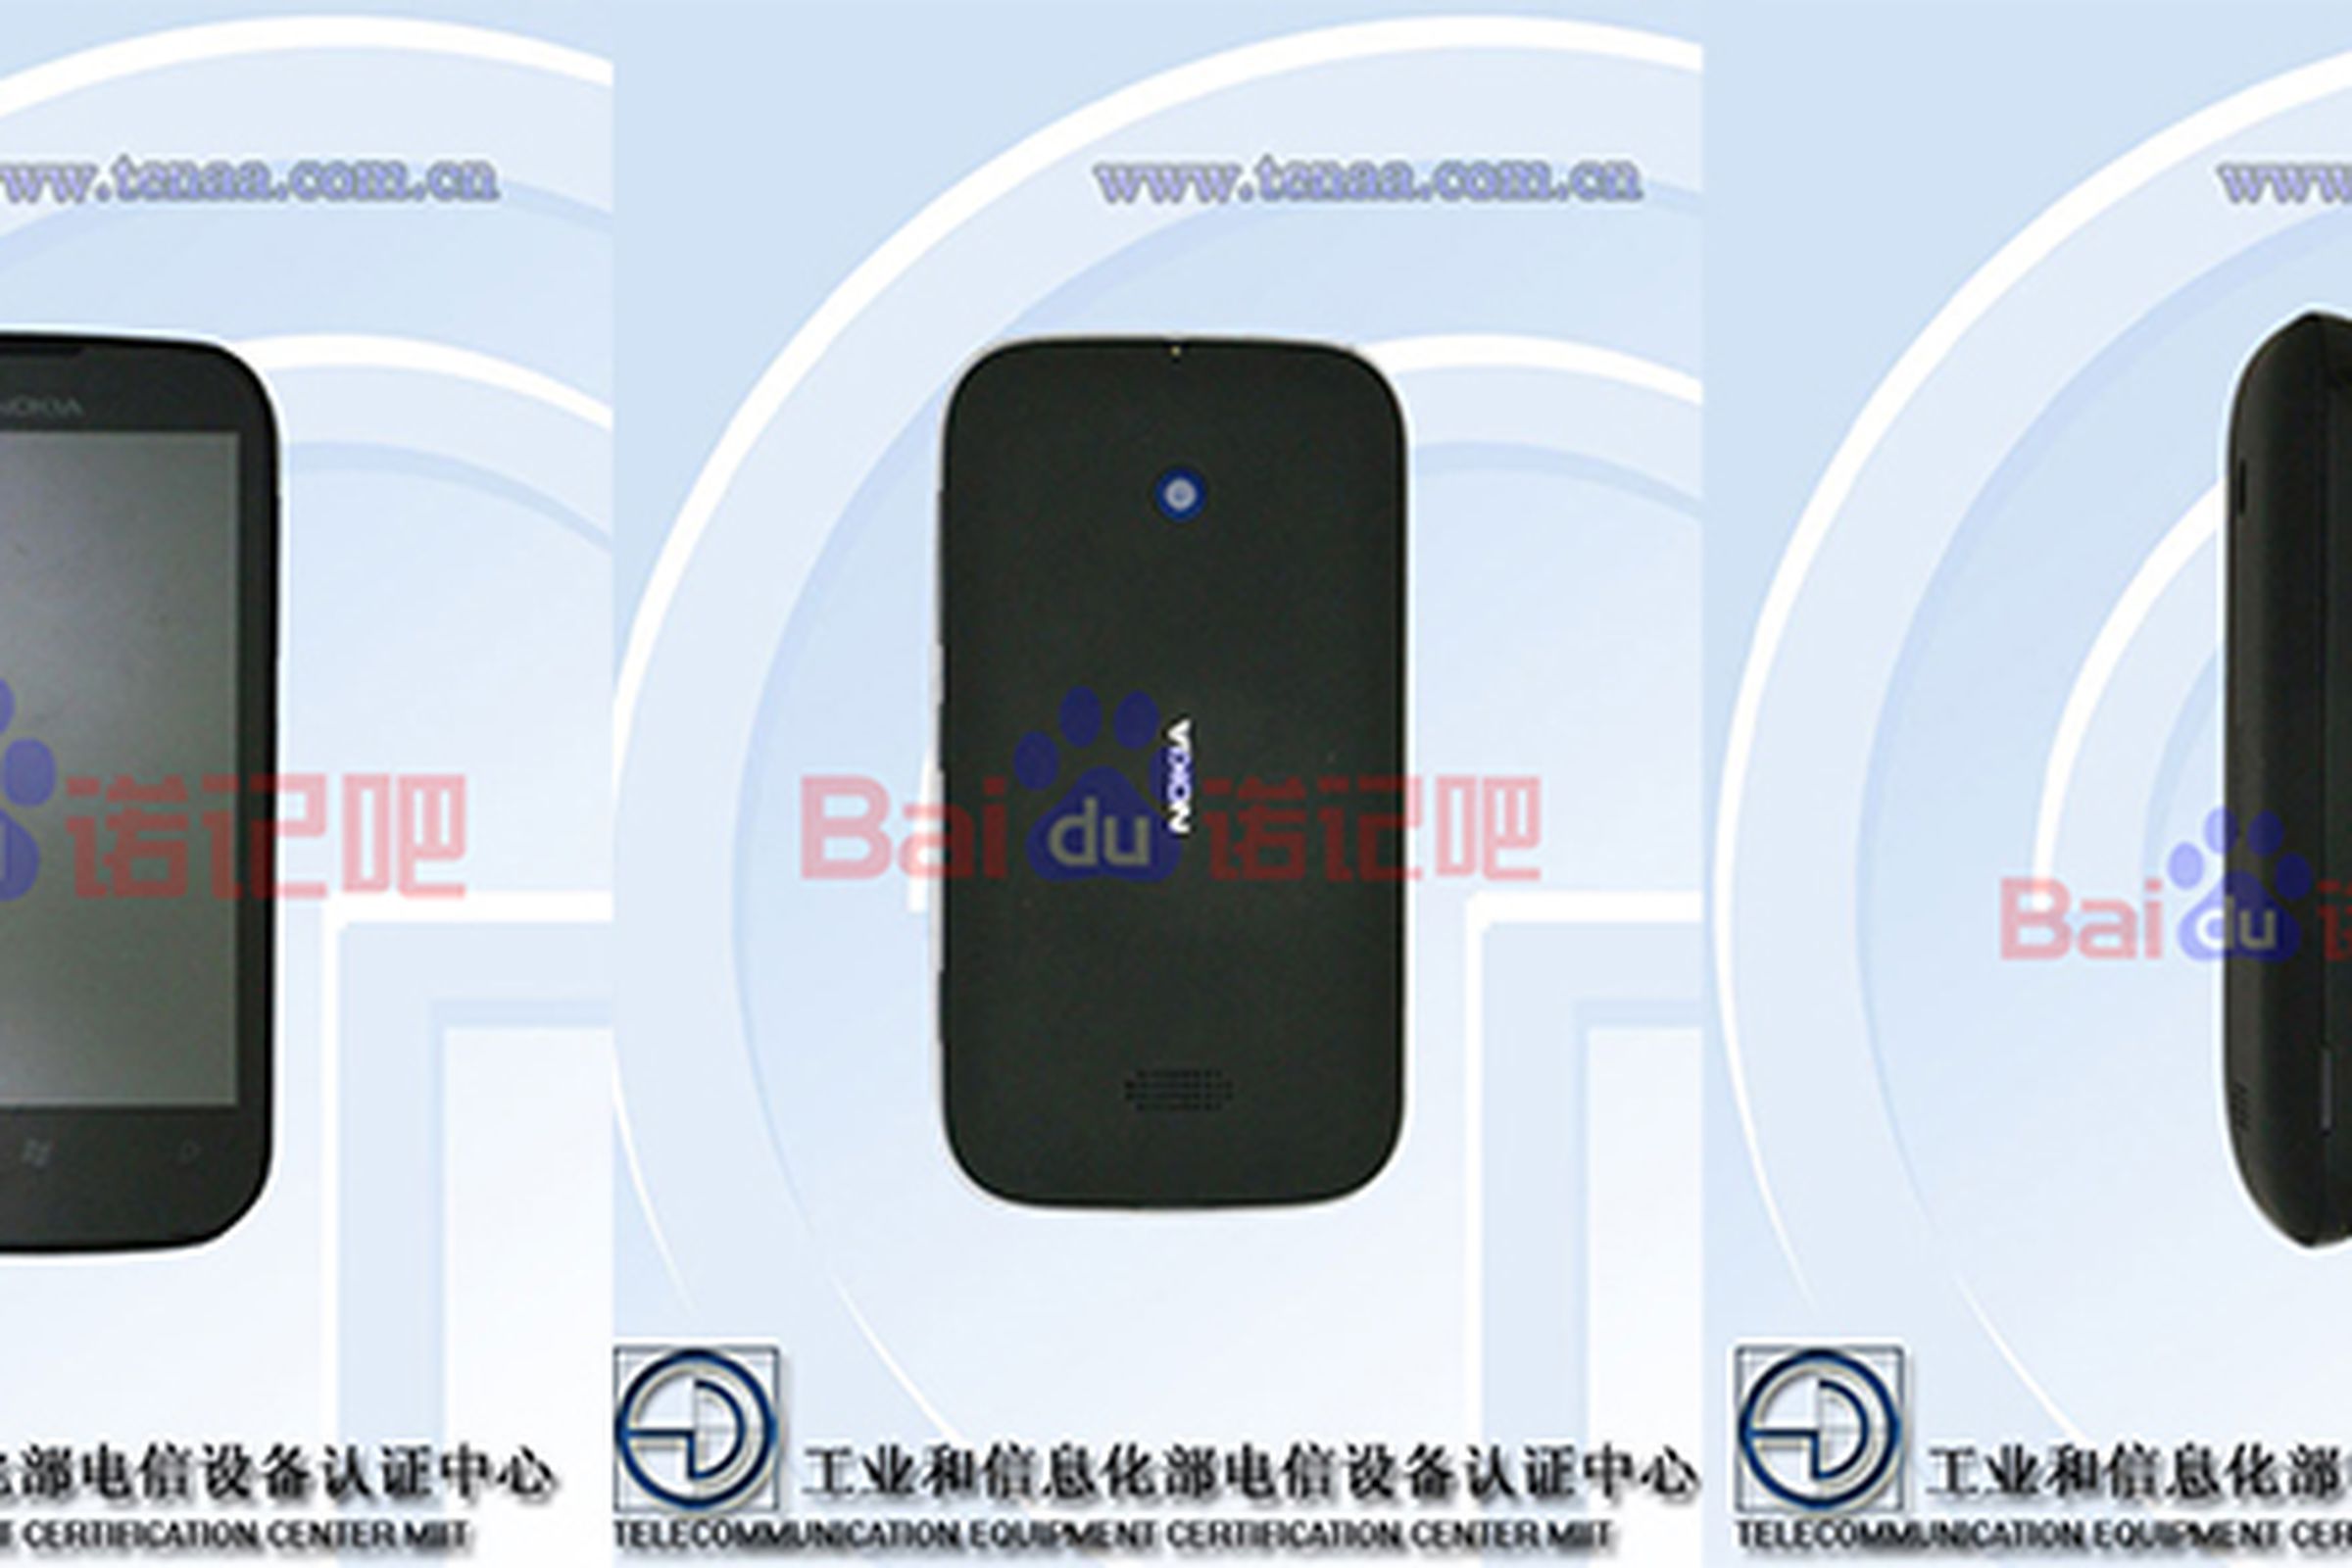 Nokia Lumia 510 (Baidu)